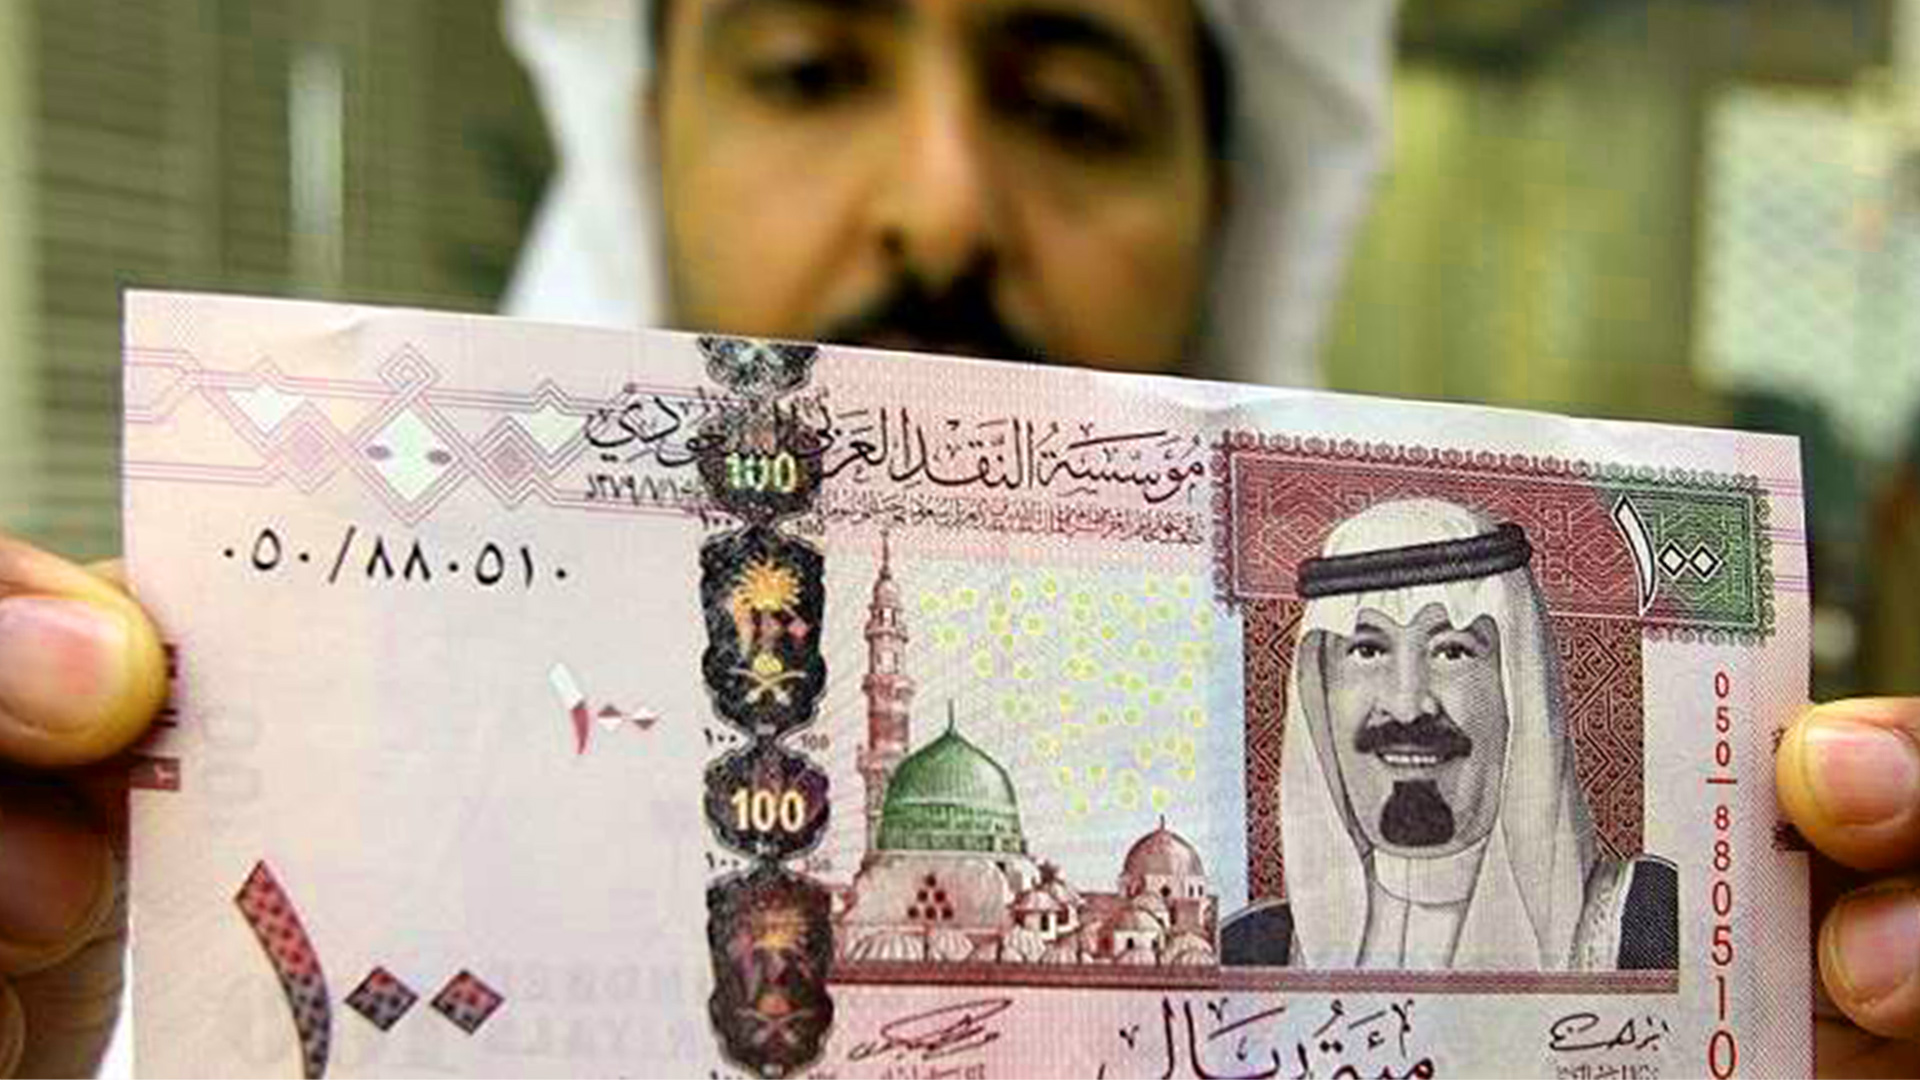 اعطاء تمويل شخصي سريع بدون كفيل 300 الف للجميع في السعودية